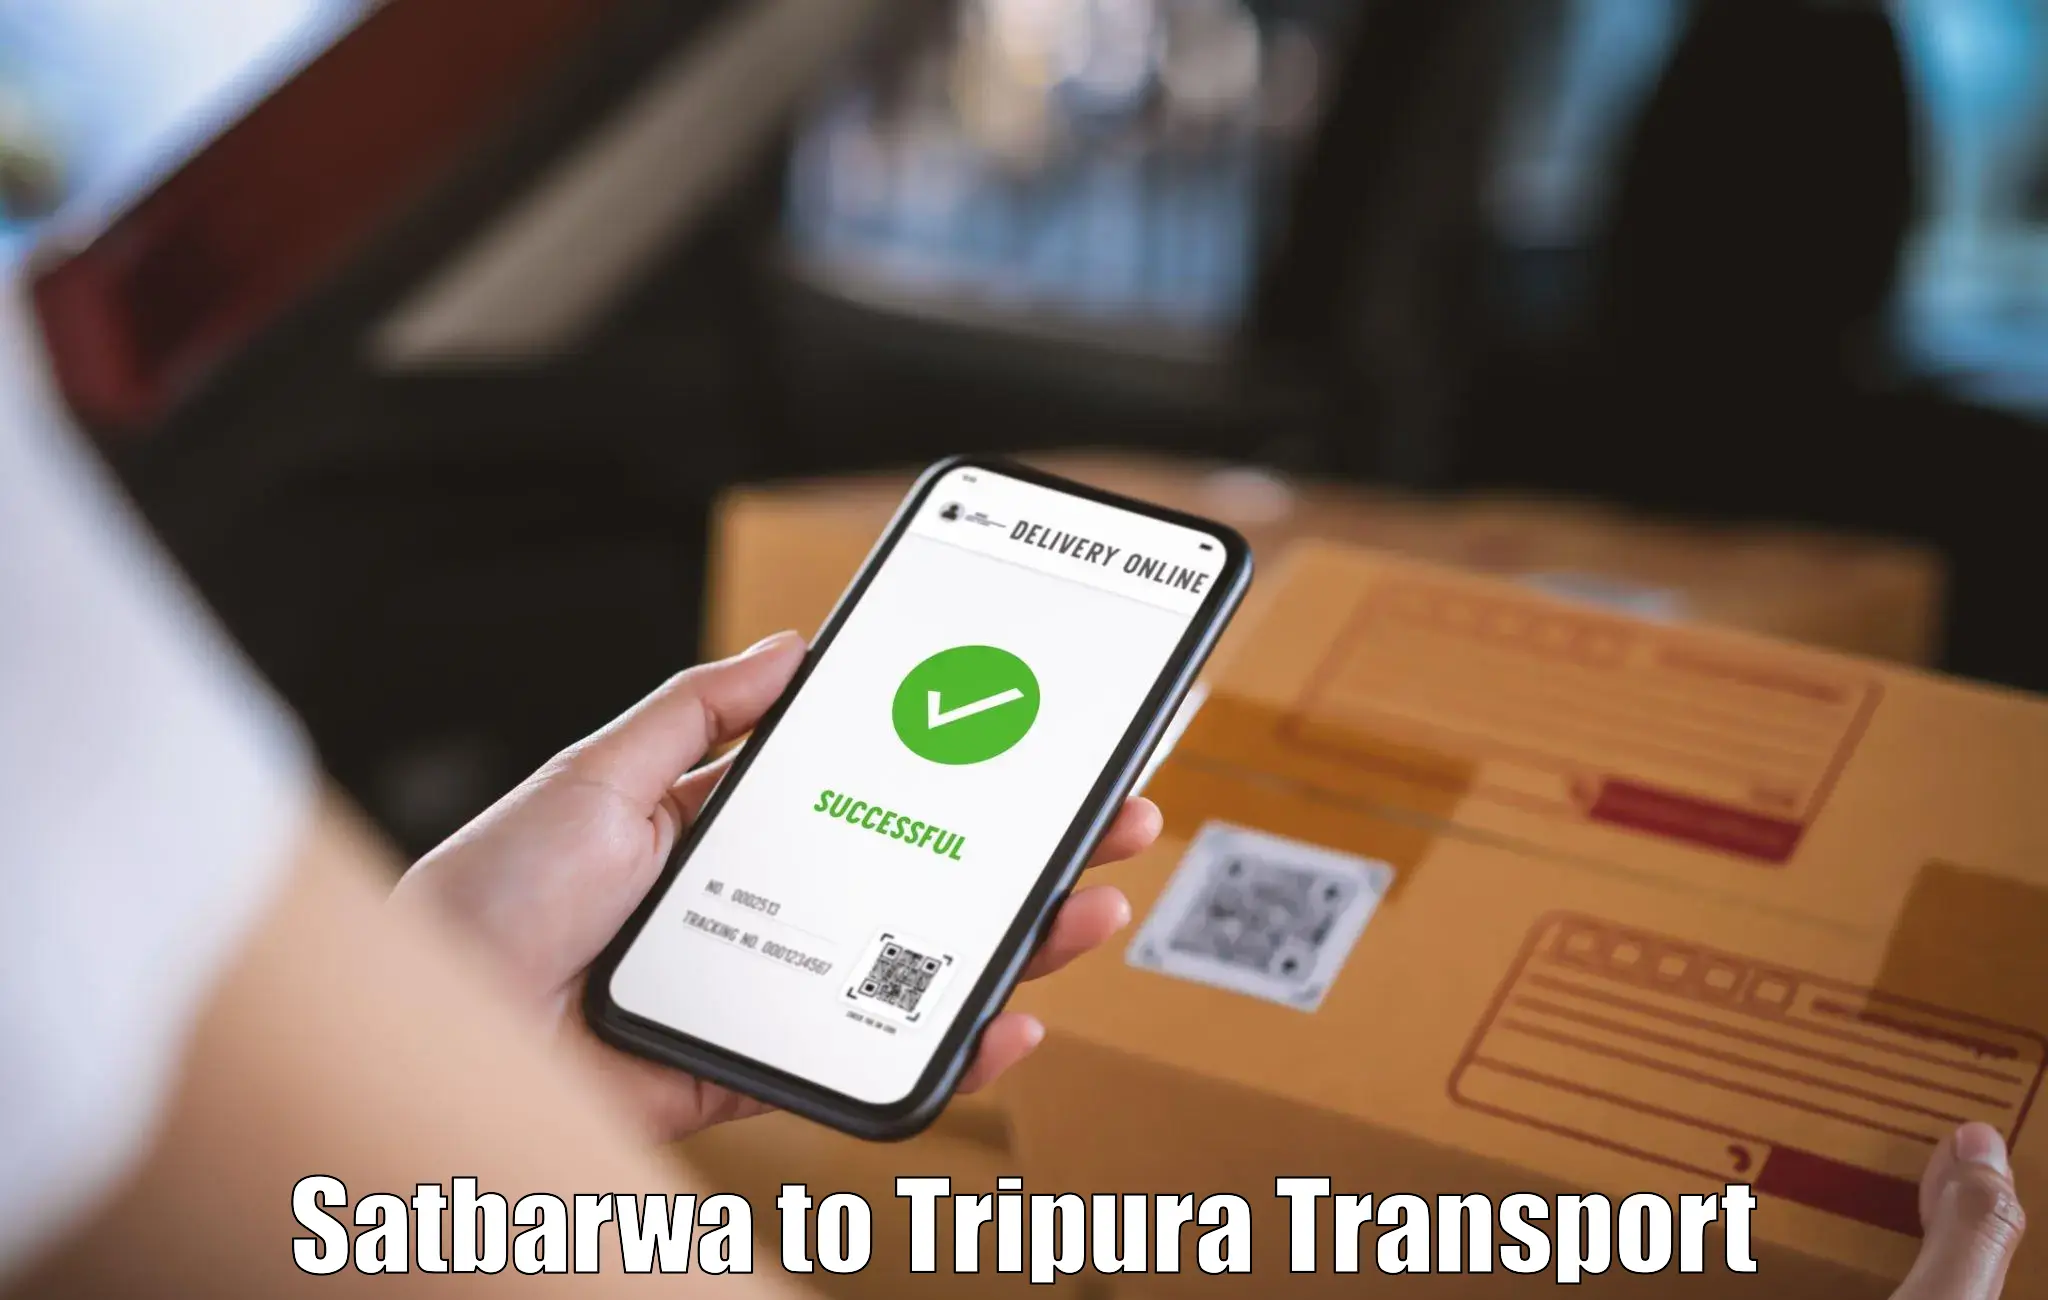 Two wheeler transport services Satbarwa to Kailashahar